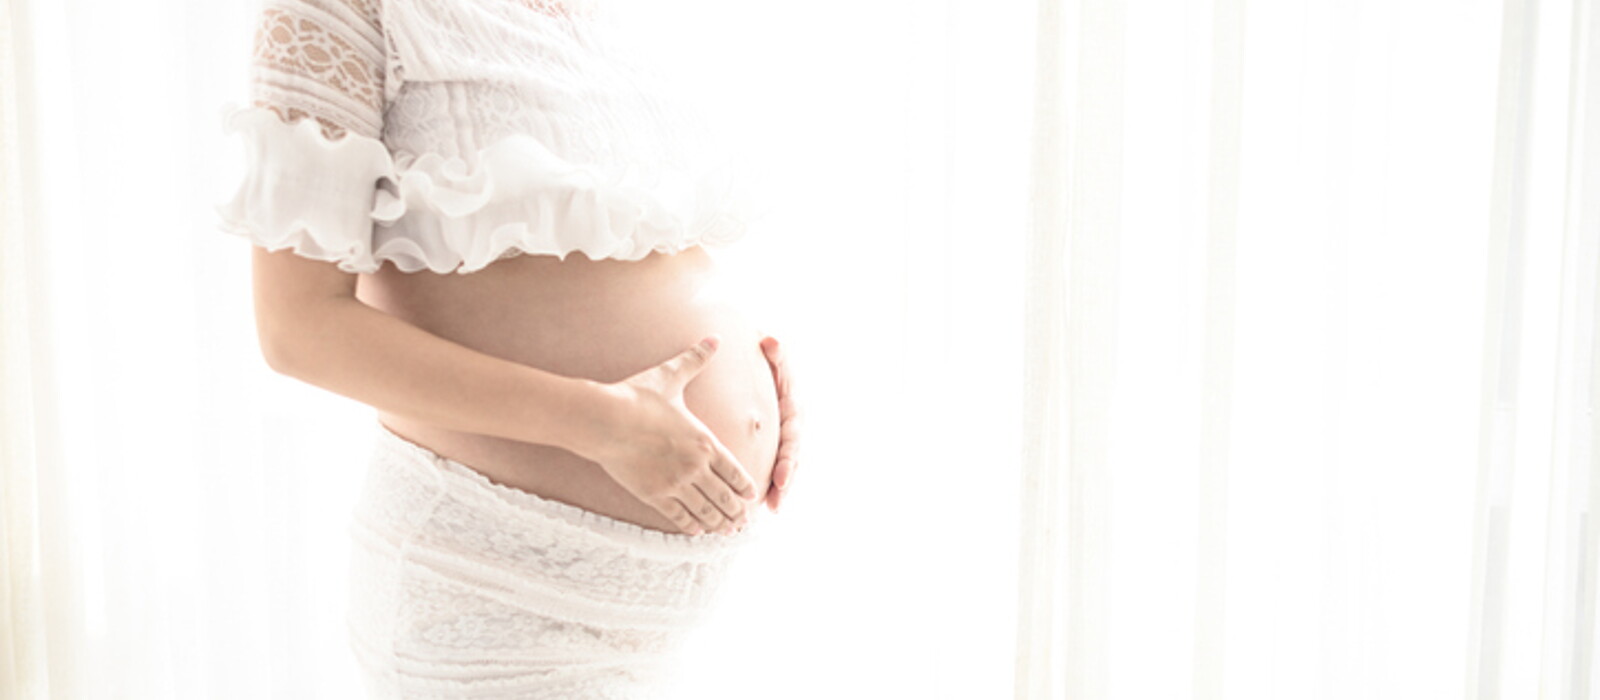 ท้องผูกตั้งครรภ์อ่อน ๆ เกิดจากอะไร ทำยังไงให้คุณแม่ถ่ายง่ายขึ้น